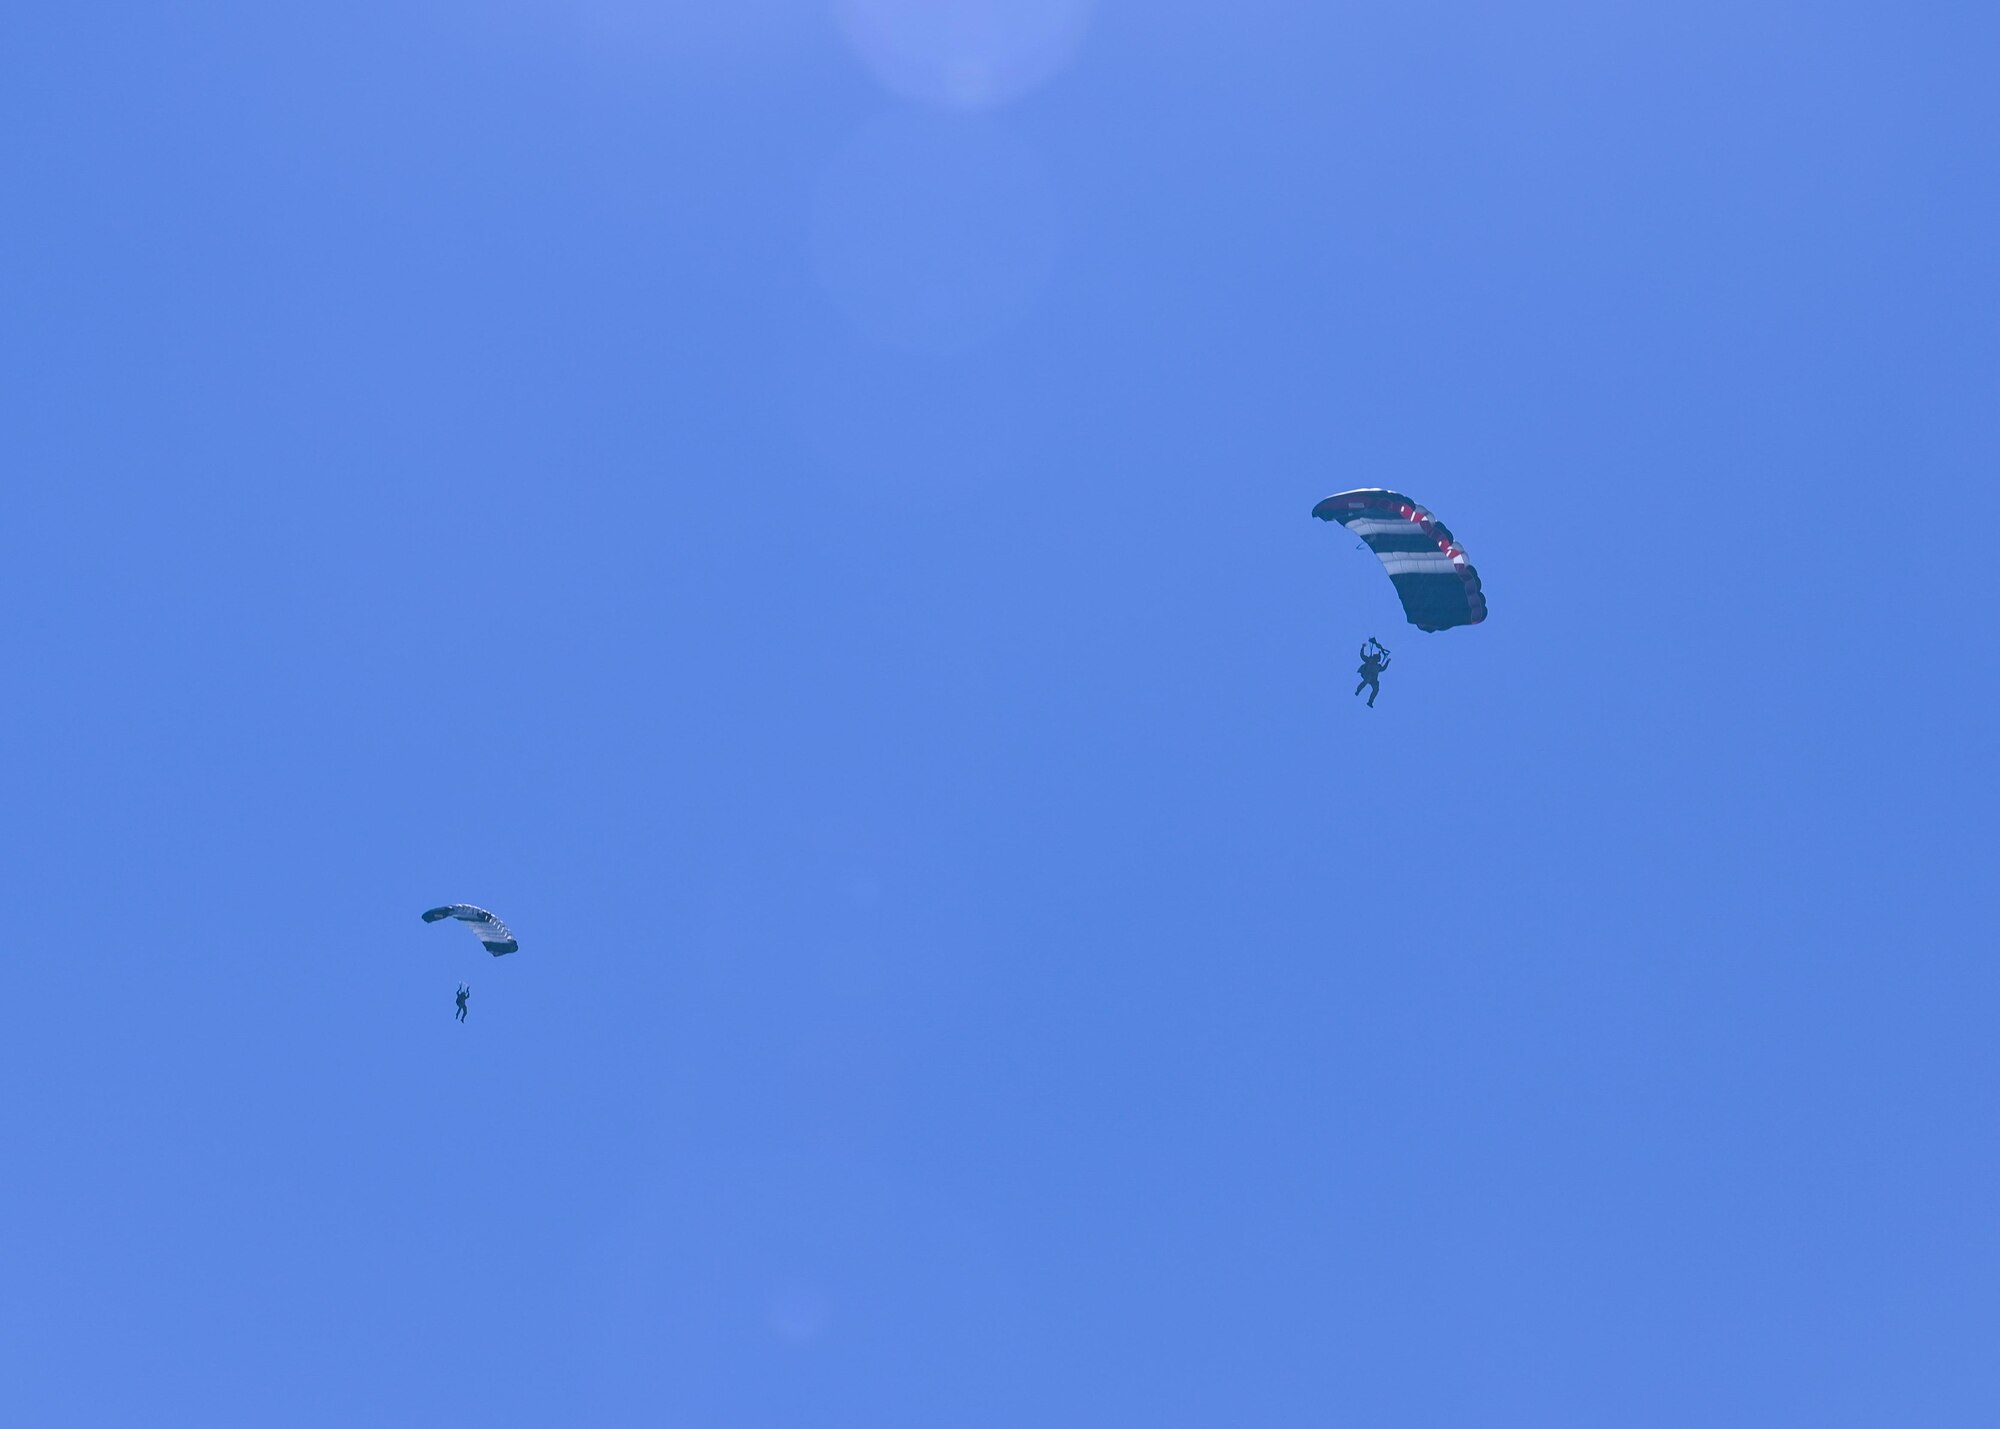 two people parachuting